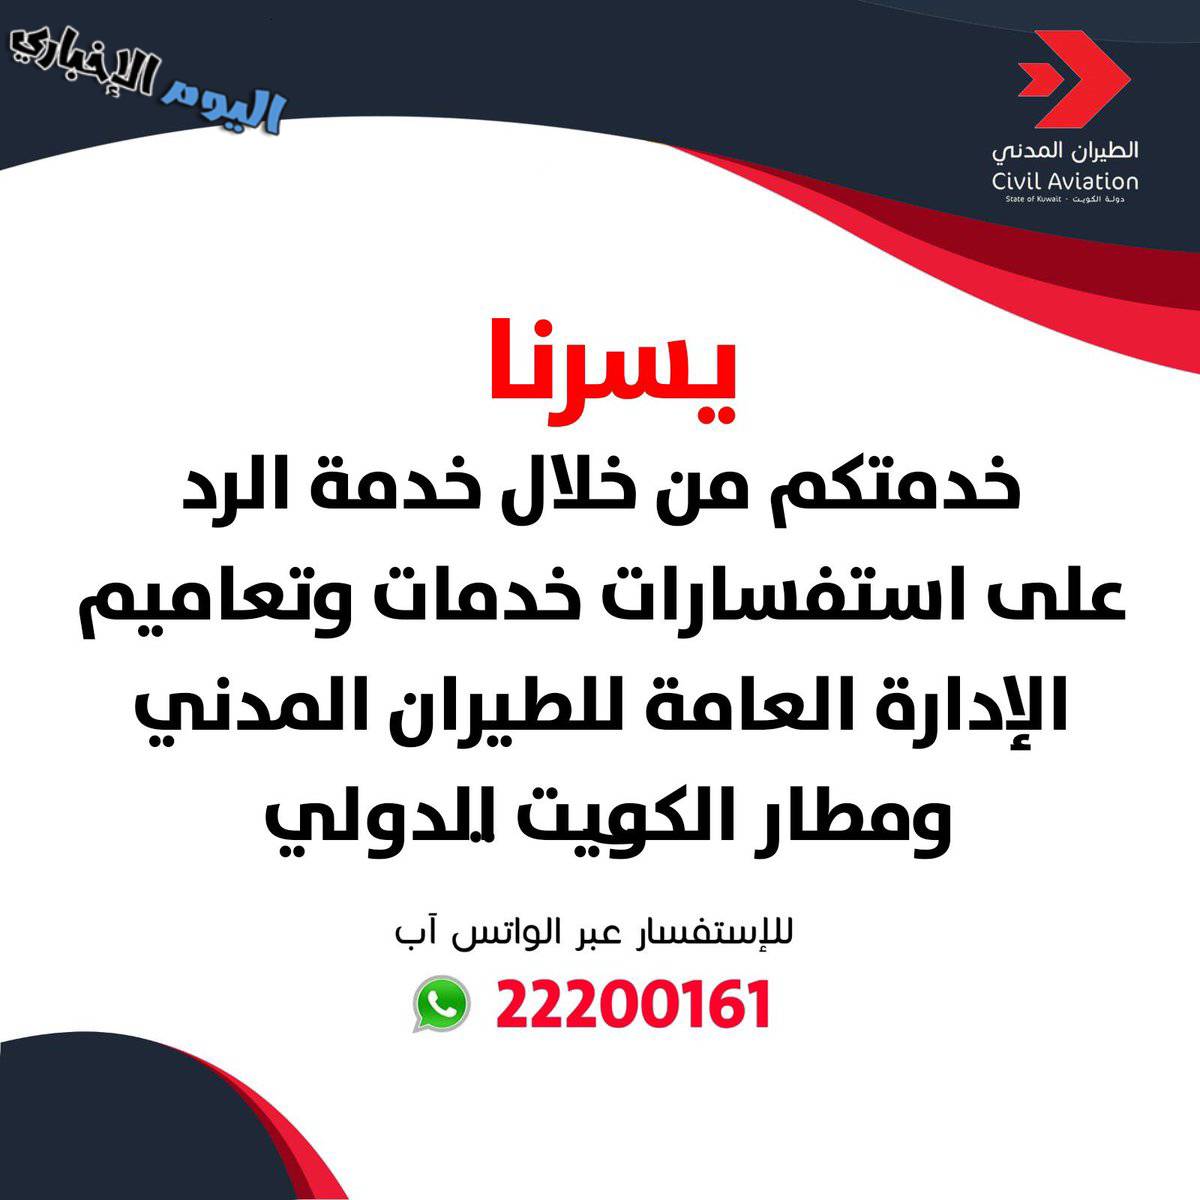 رقم واتساب الطيران المدني الكويتي